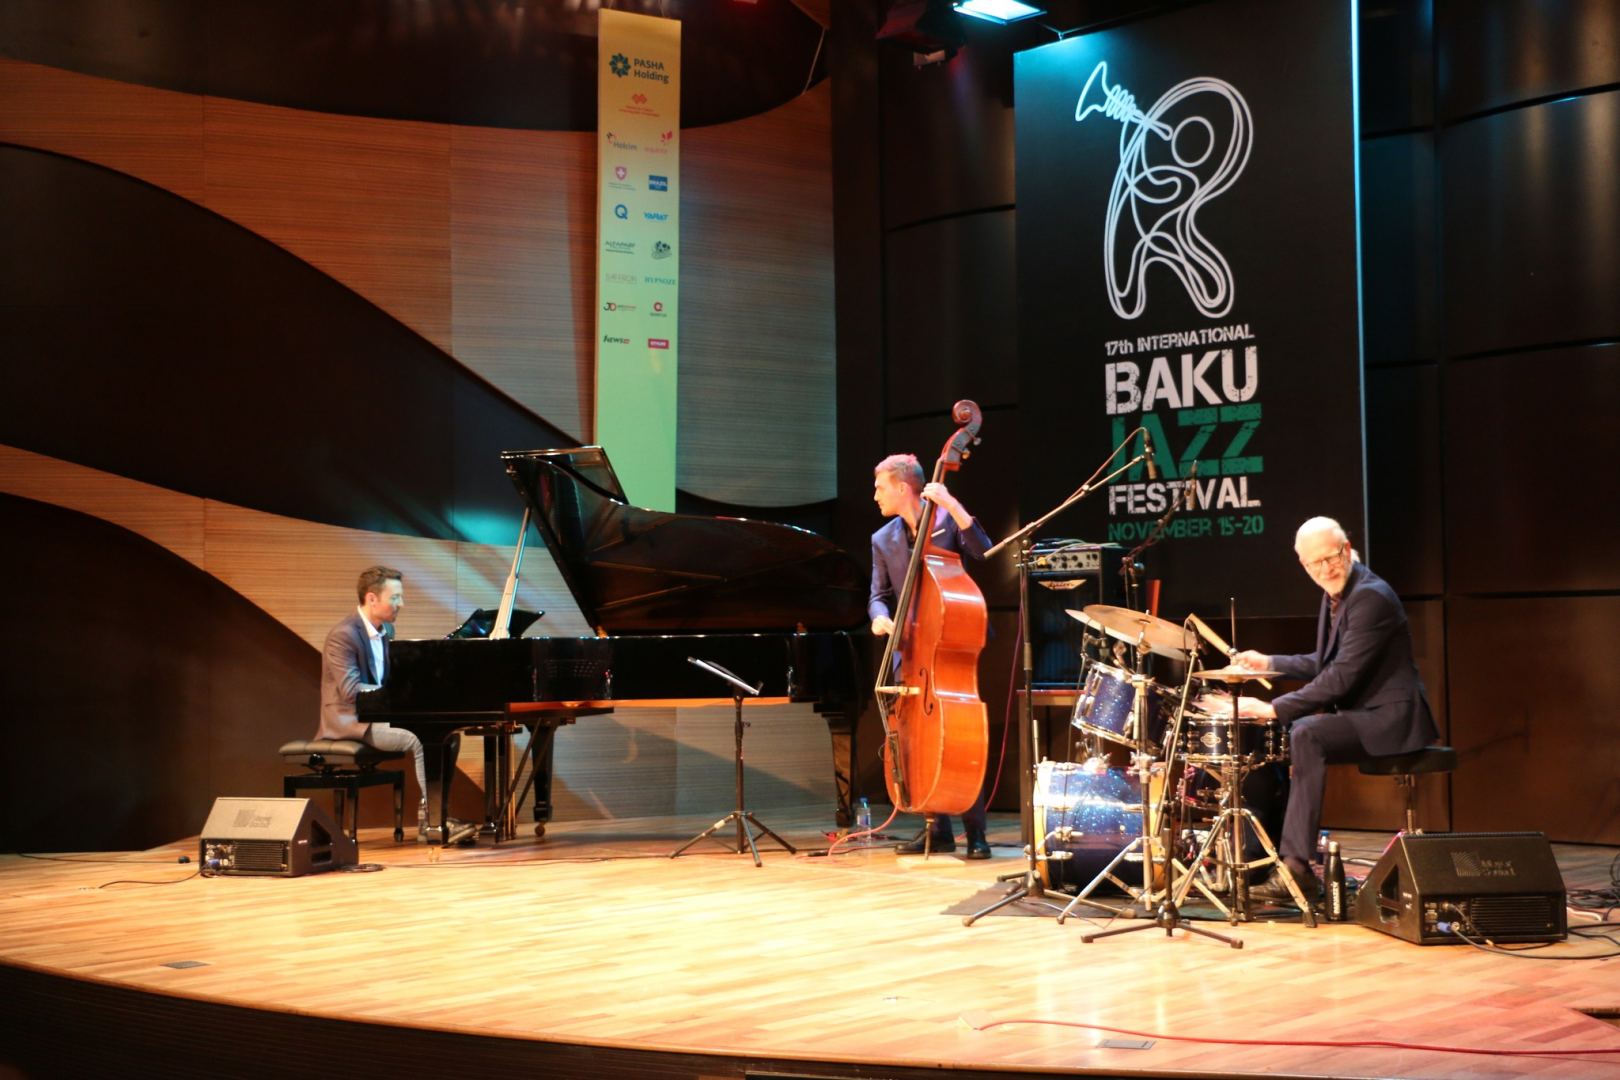 Последний аккорд осеннего джаза - завершение Baku Jazz Festival 2022 (ВИДЕО, ФОТО)